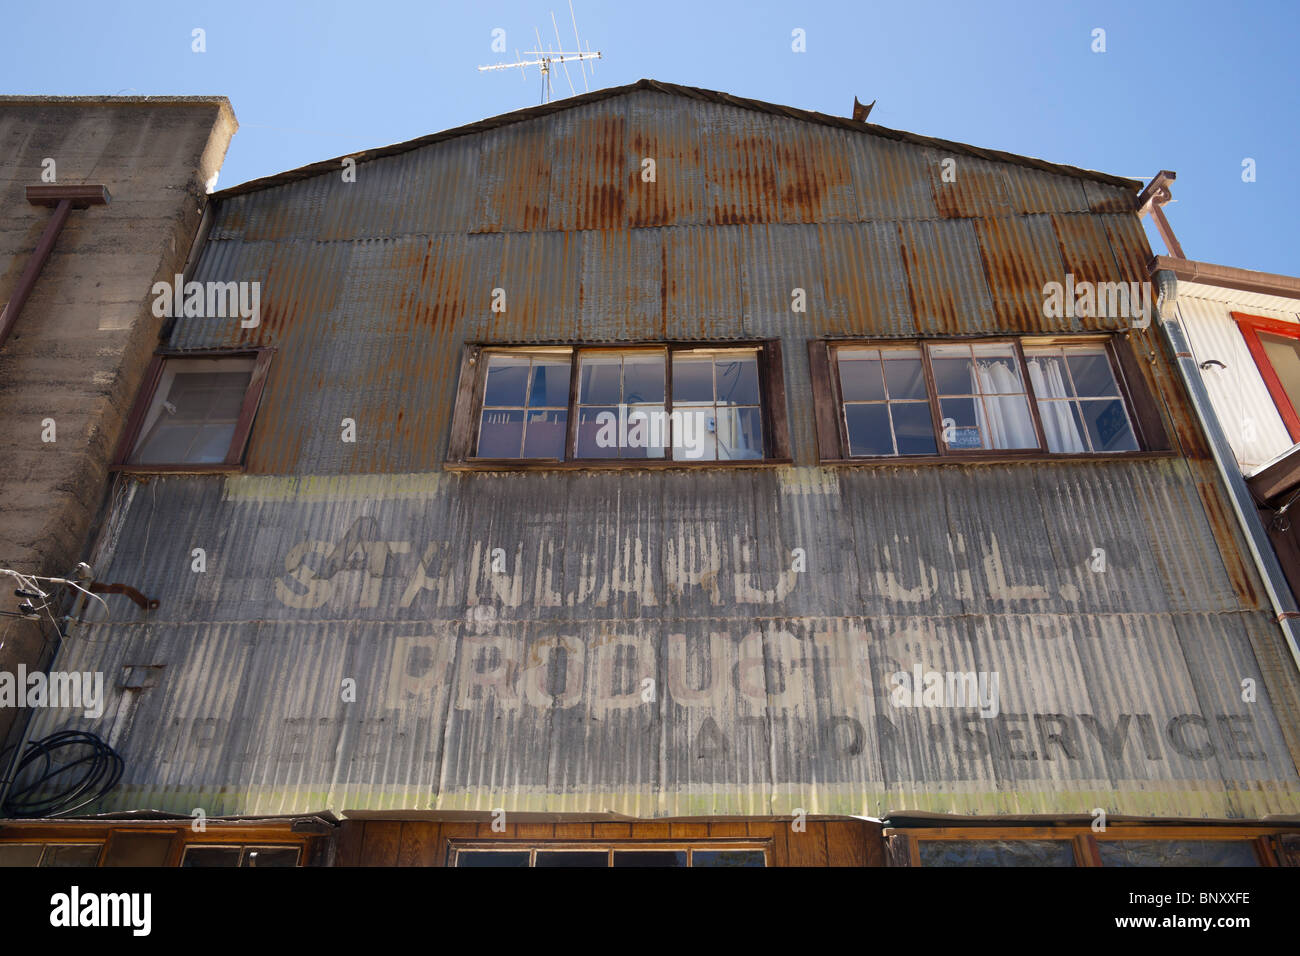 Jerome, Arizona - Kupferbergbau Altstadt in der Nähe von Sedona. Alte Garage mit verblassten Standardöl Zeichen Antiquitäten jetzt Geschäfte. Stockfoto